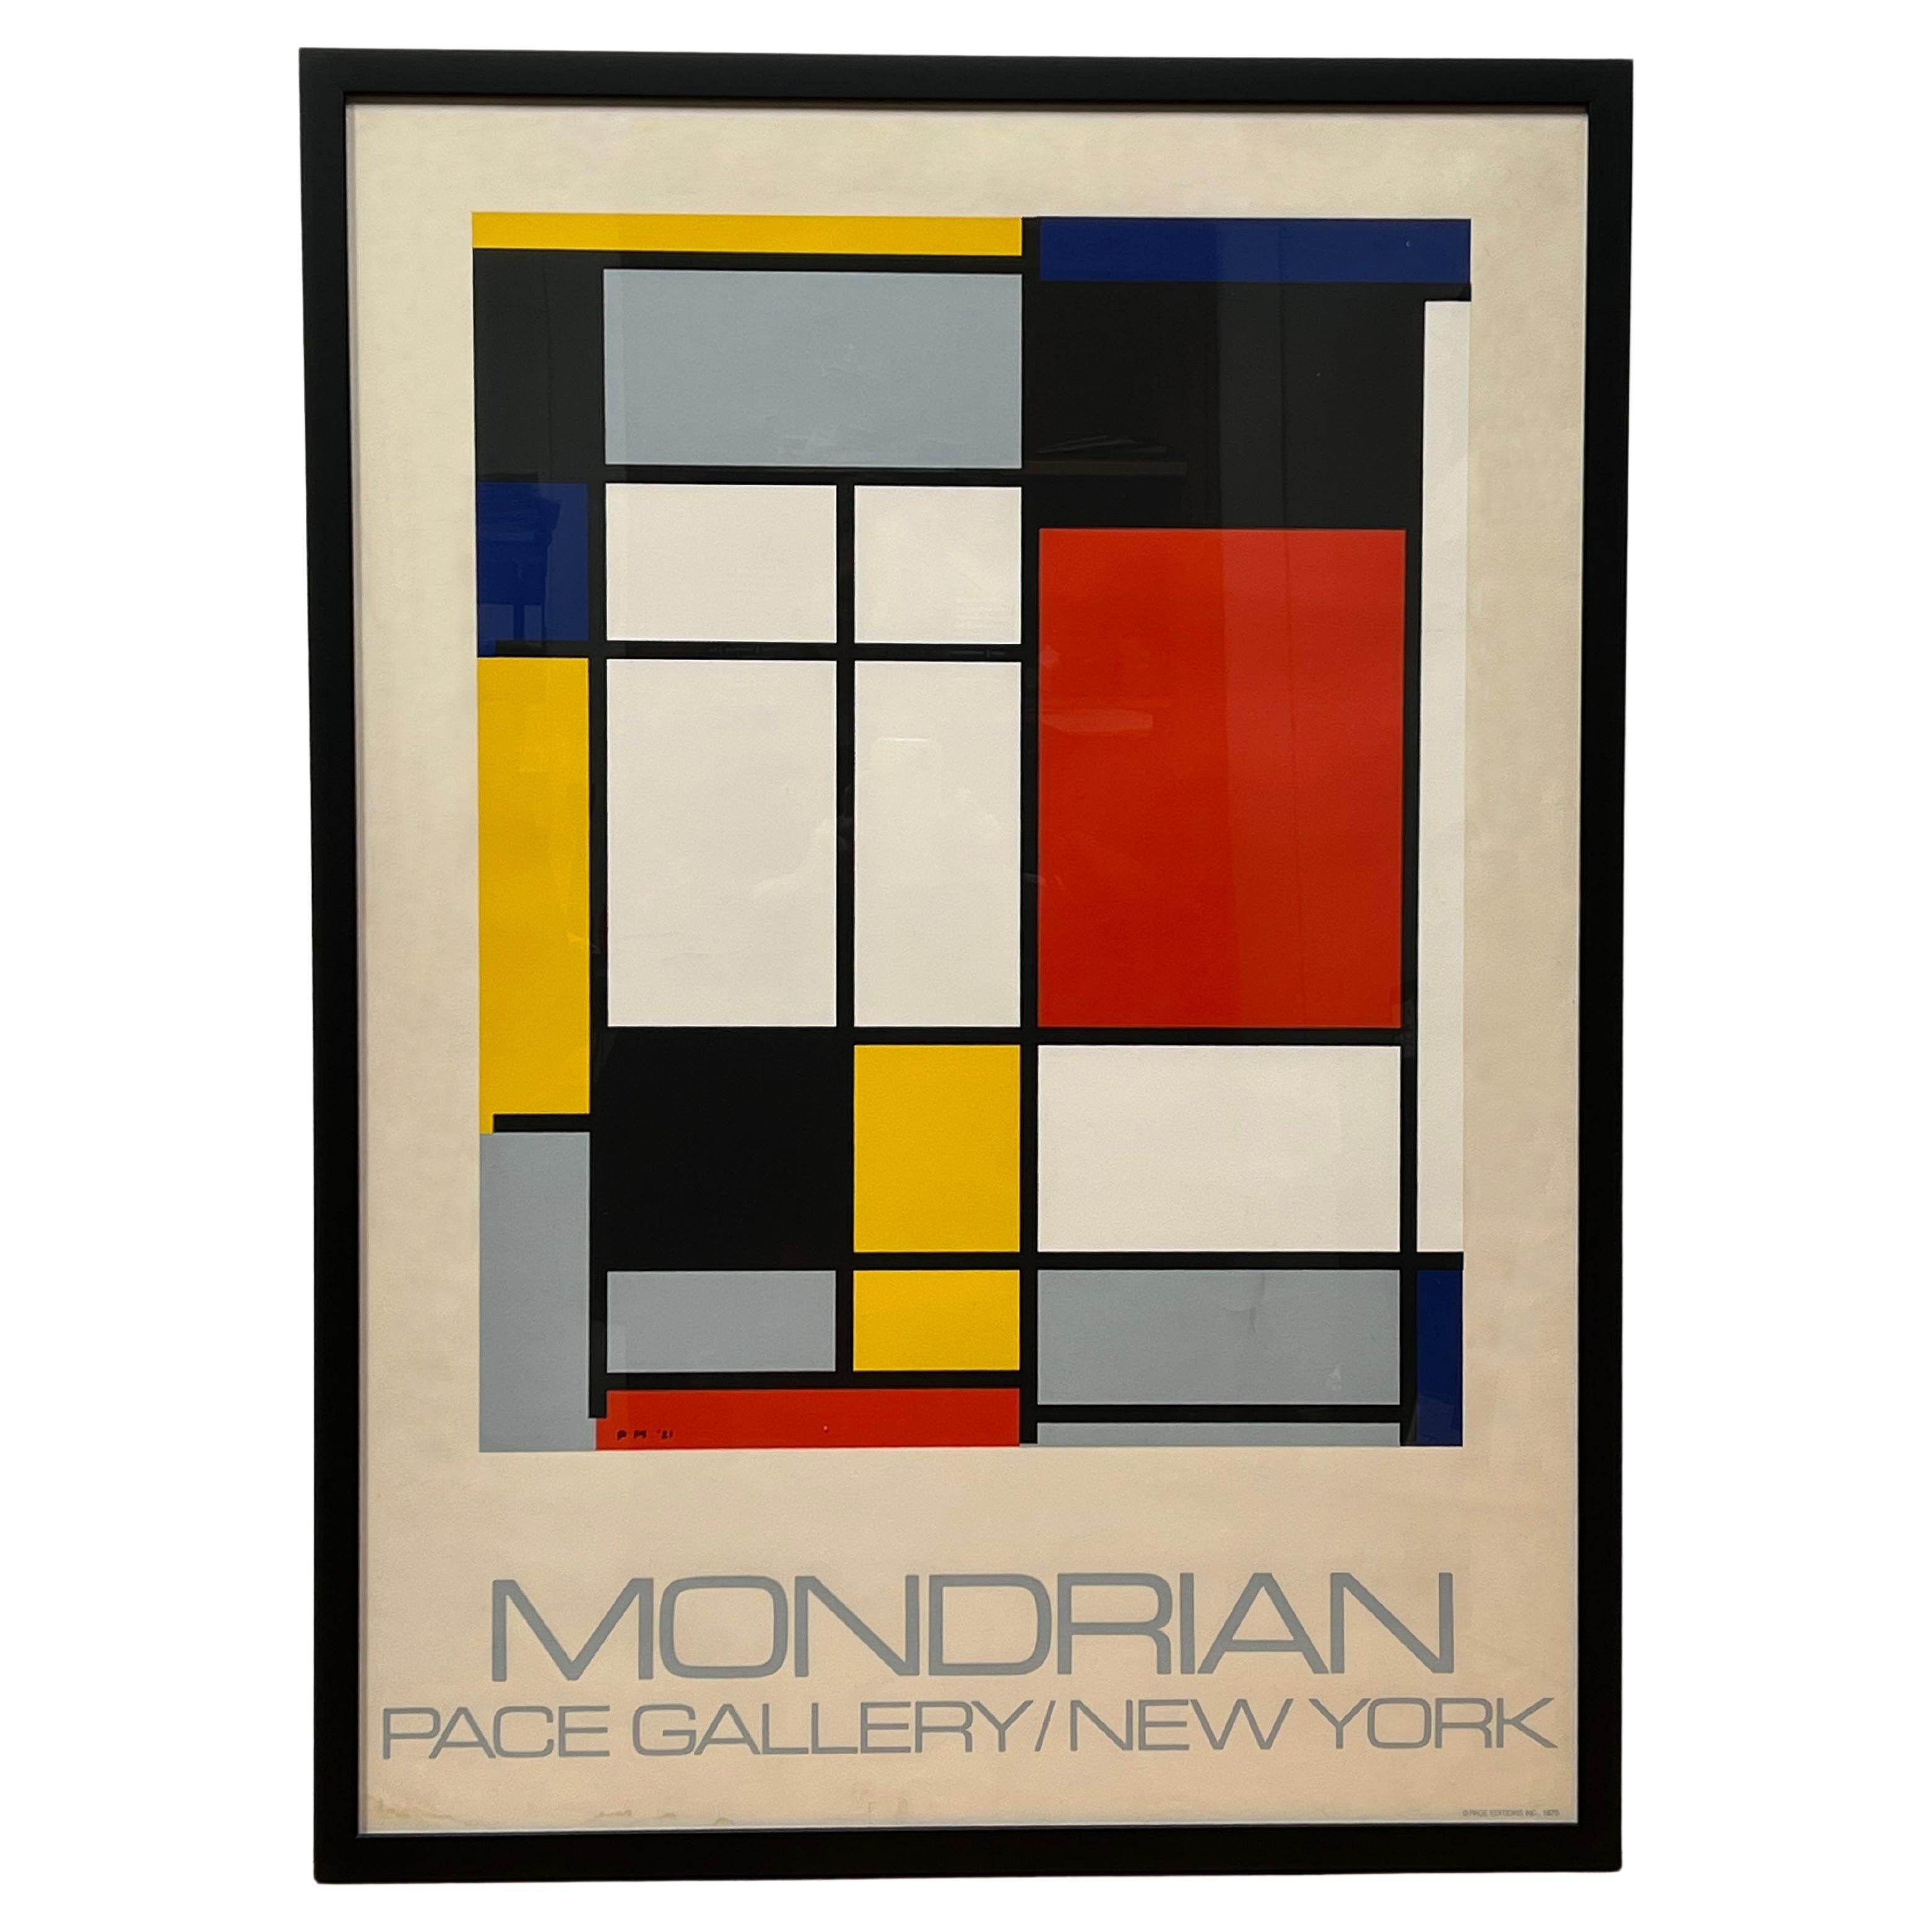 Piet Mondrian Art Prices | ecampus.egerton.ac.ke